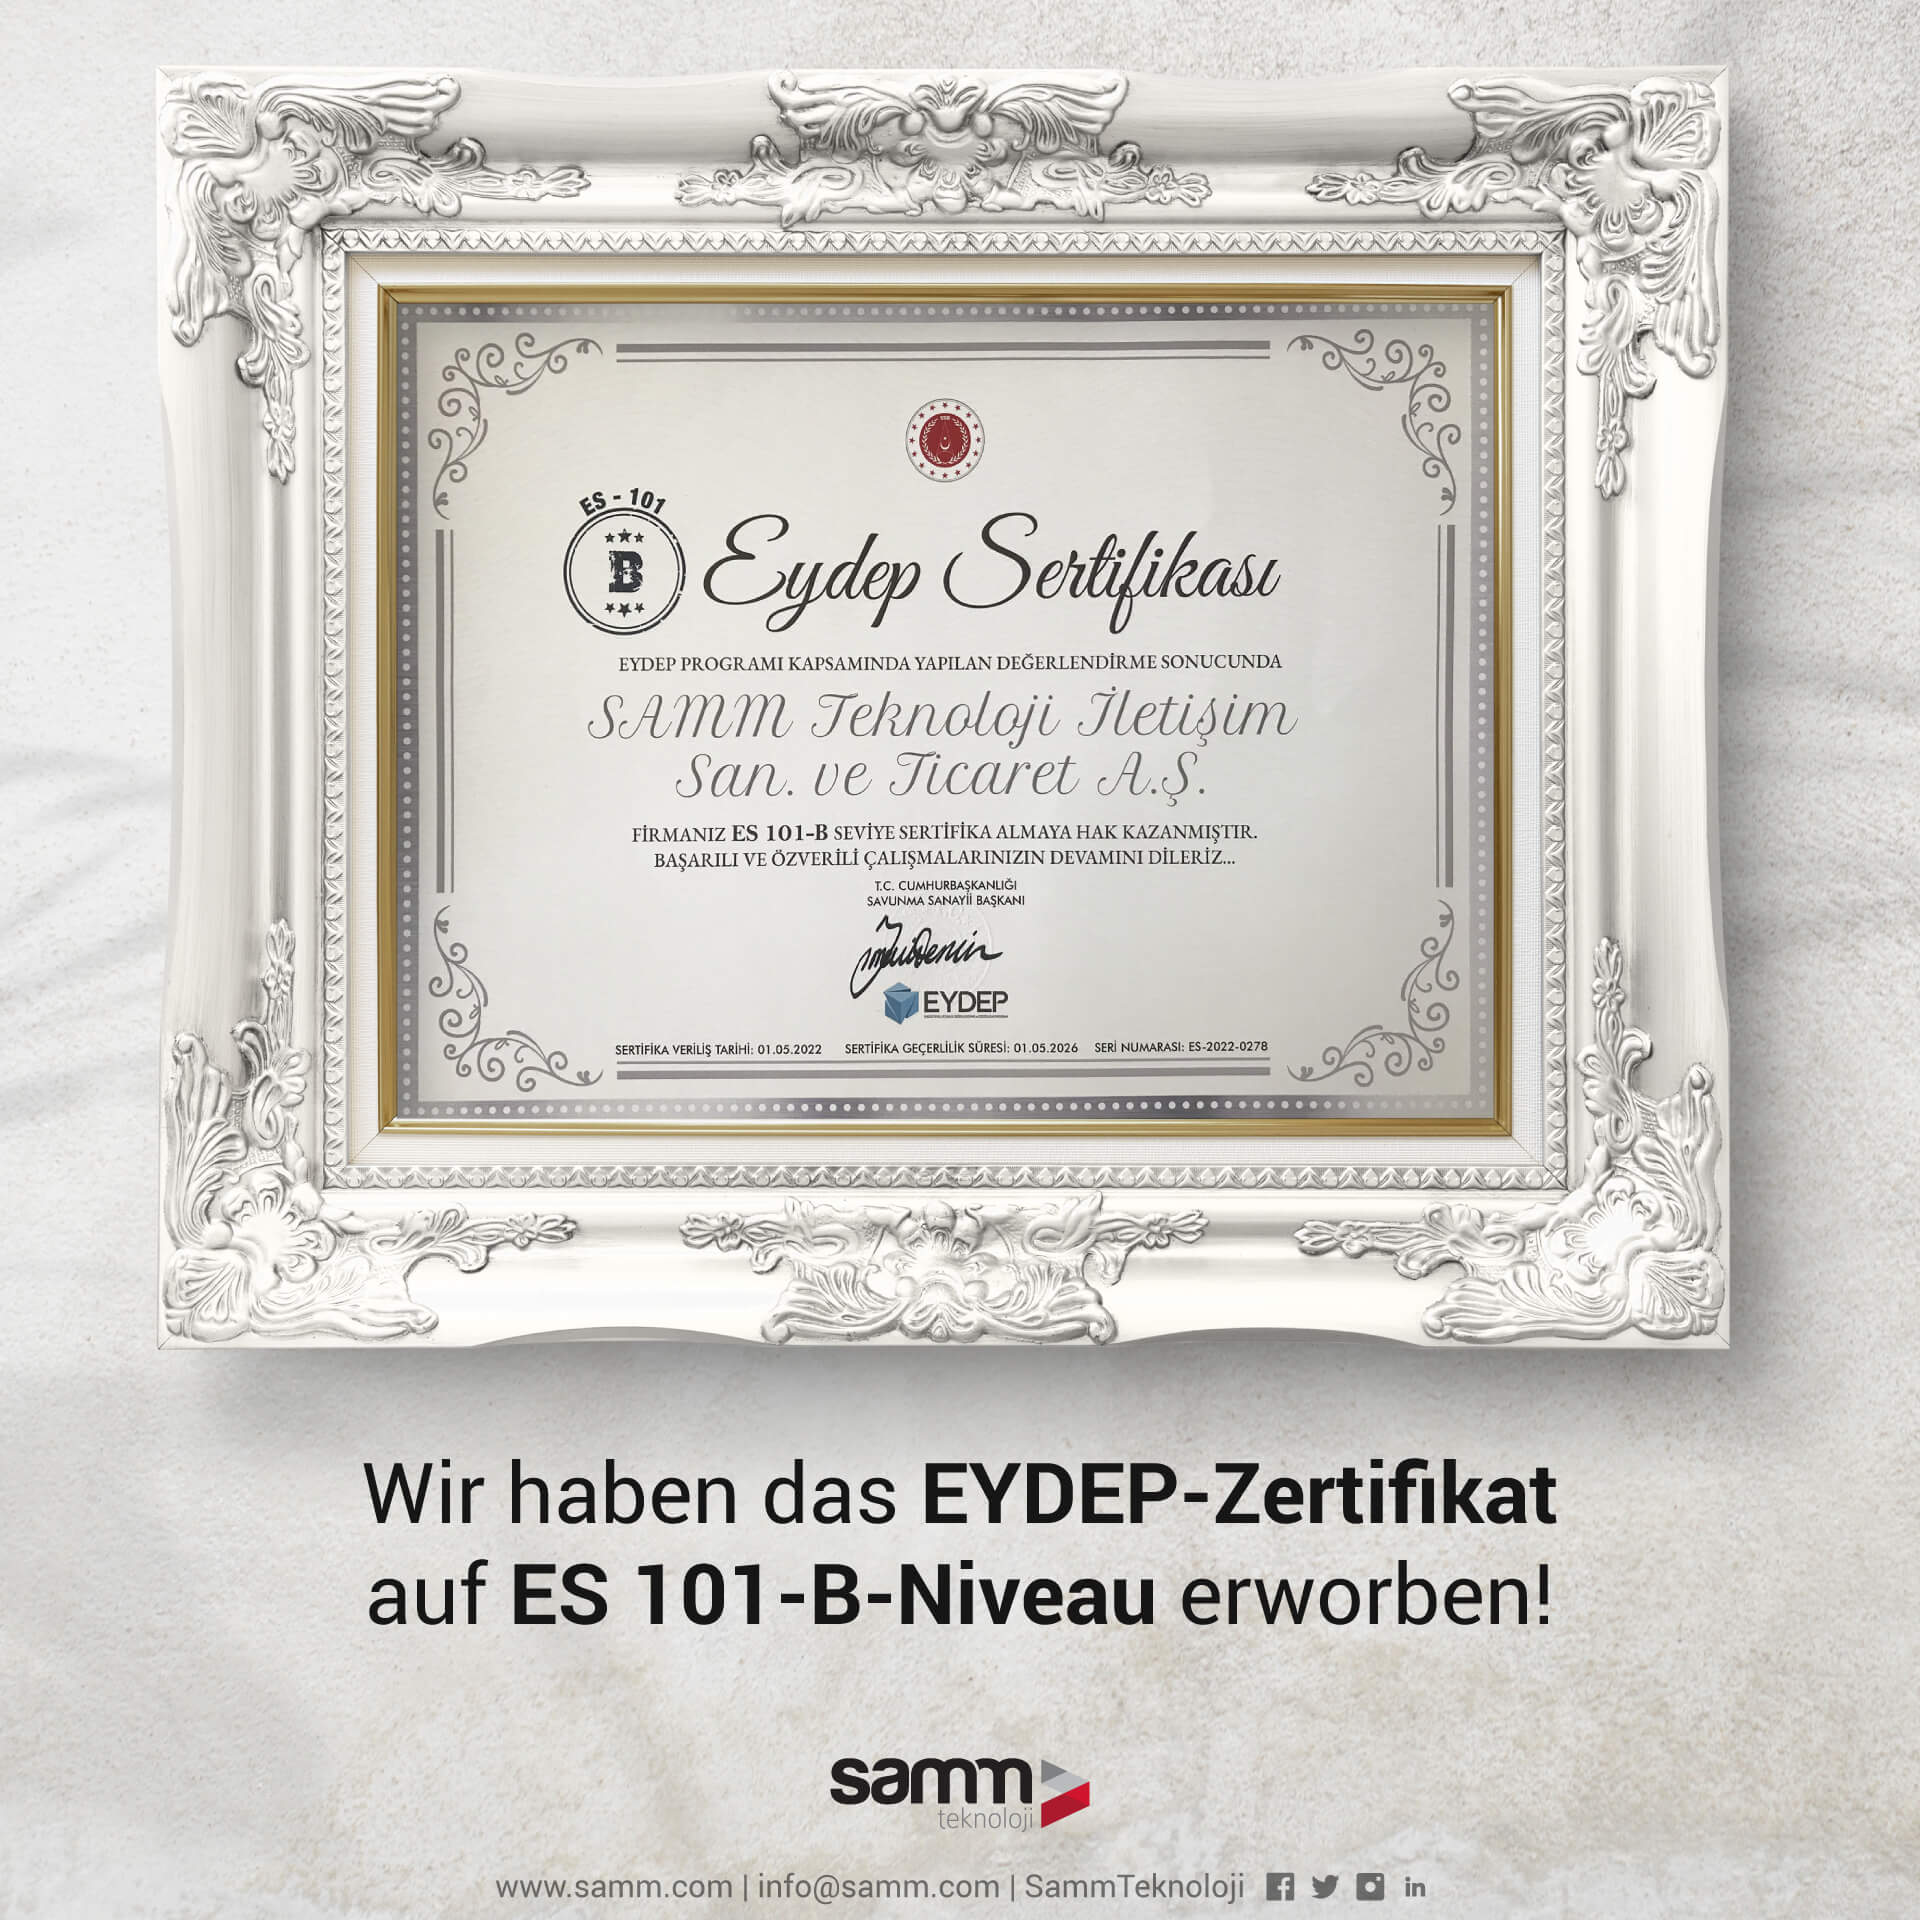 Wir haben das EYDEP-Zertifikat auf ES 101-B-Niveau erworben!